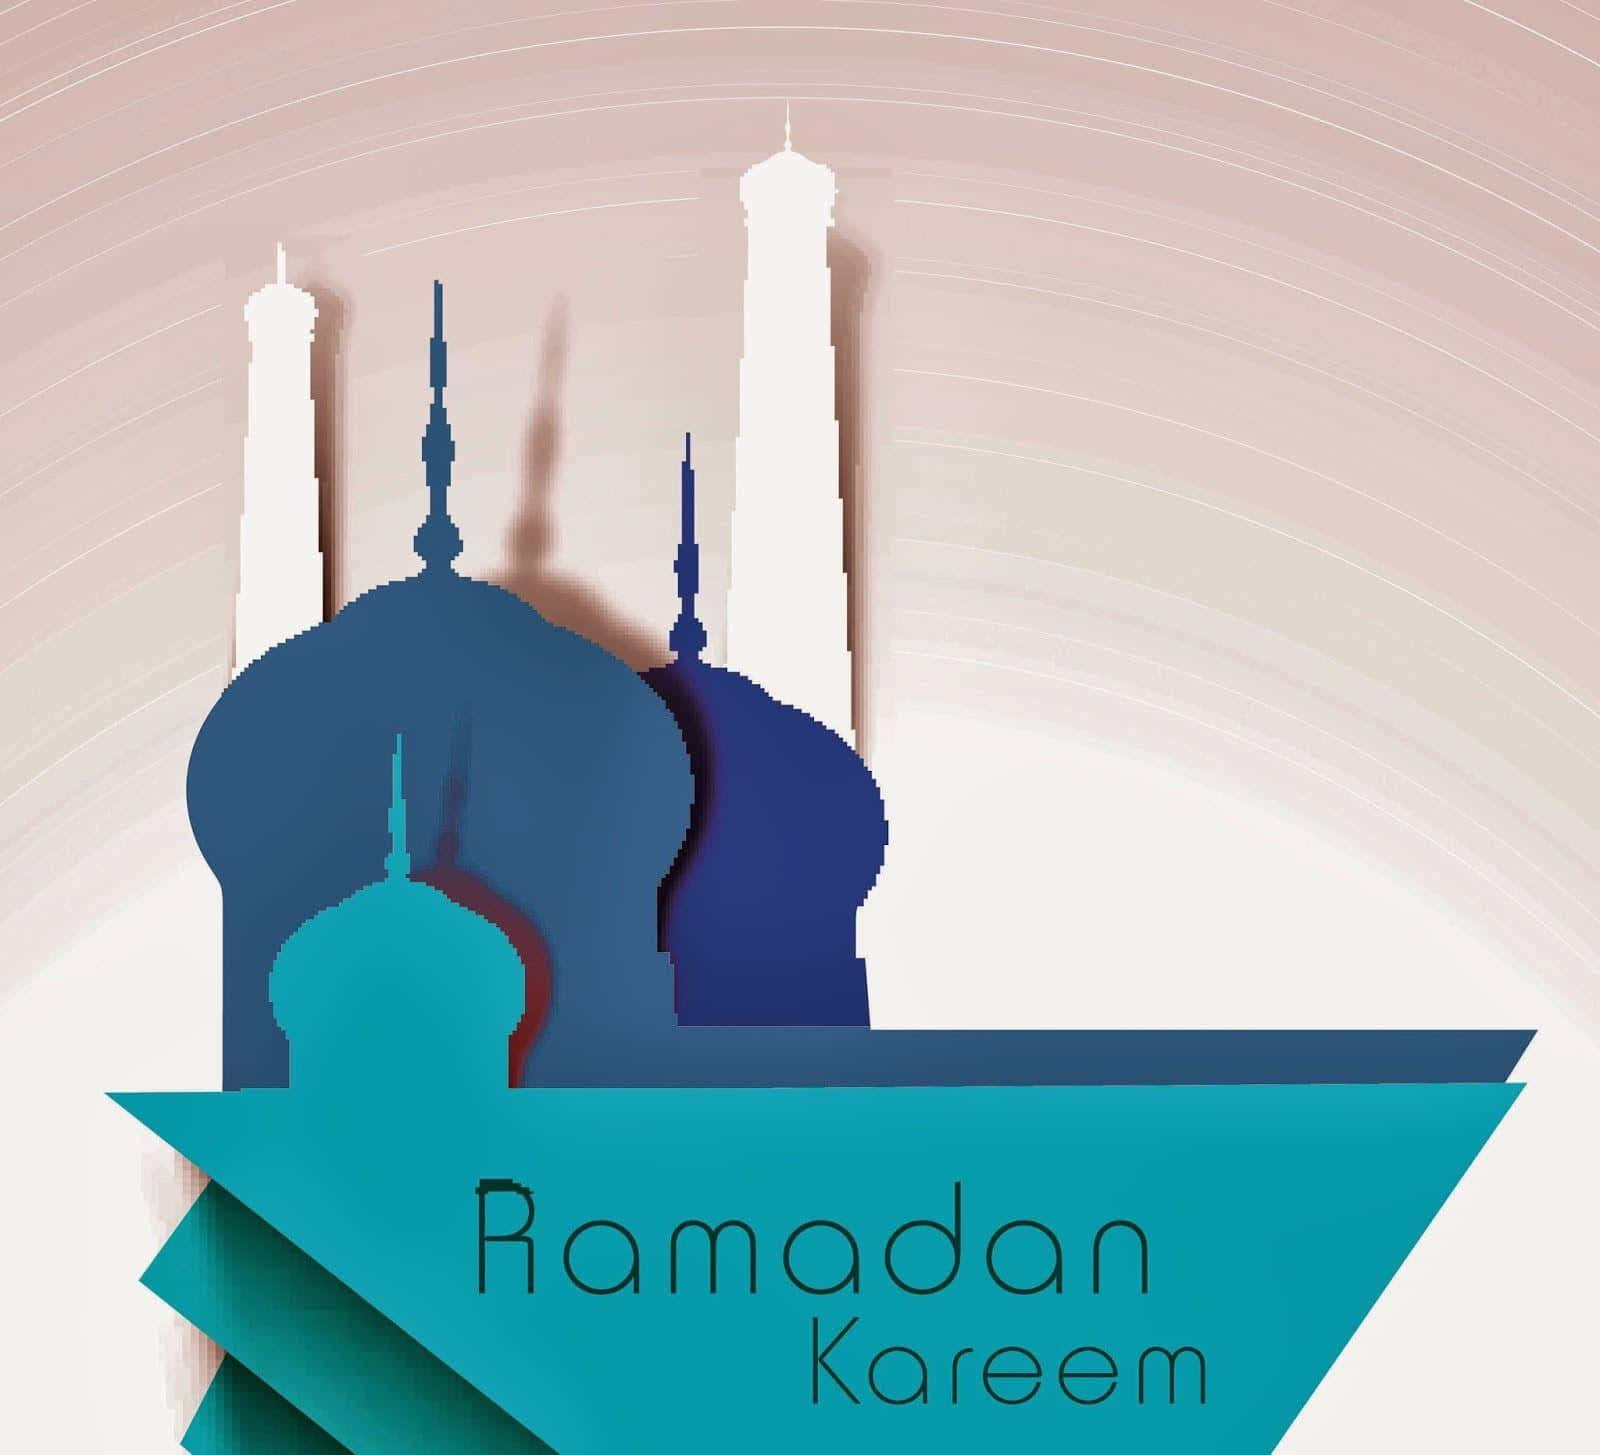 Ramadanmubarak Baggrund.